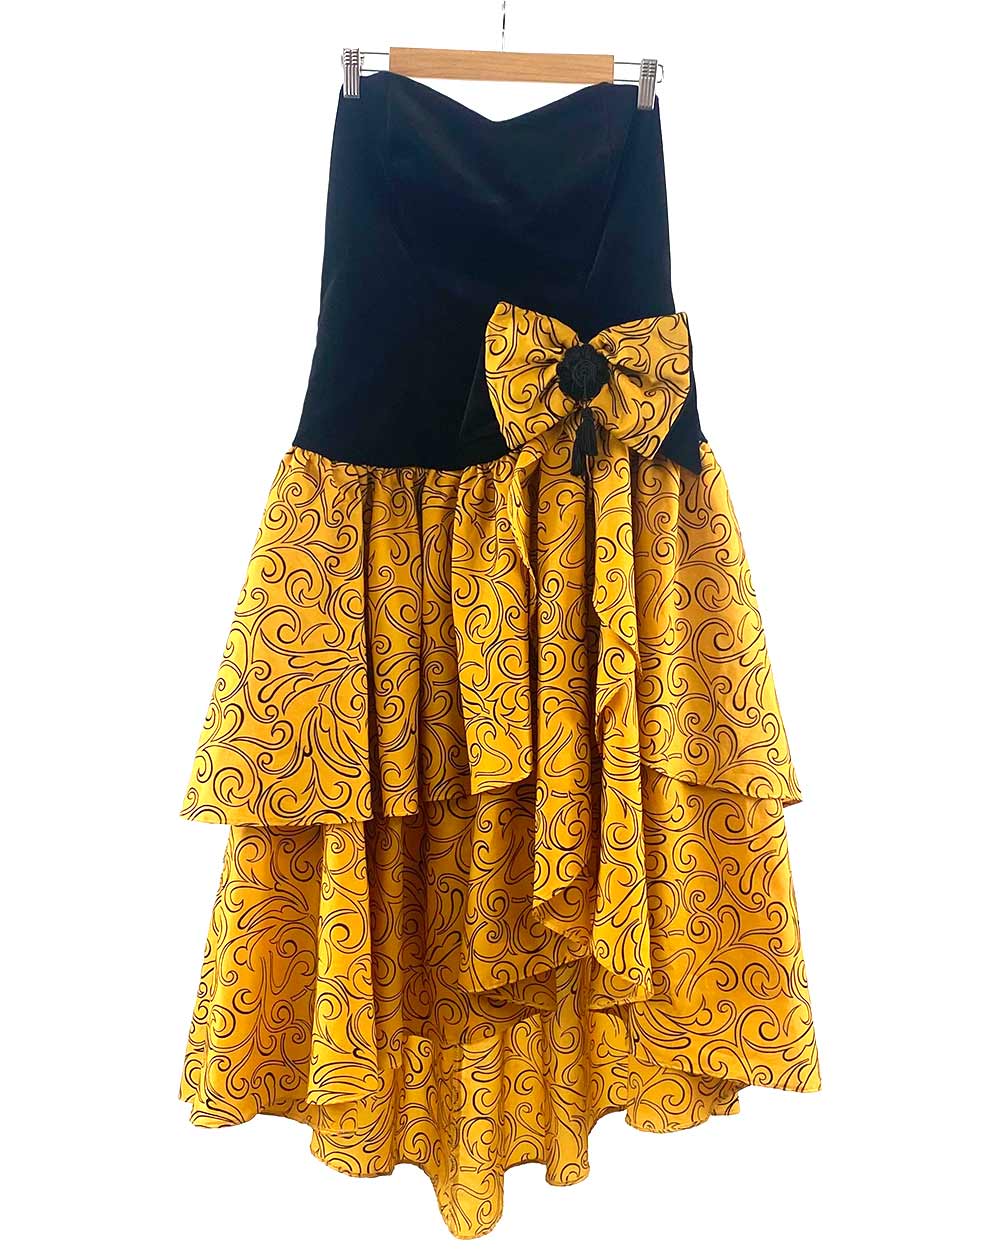 Vintage 1980s Patterned Strapless Dress